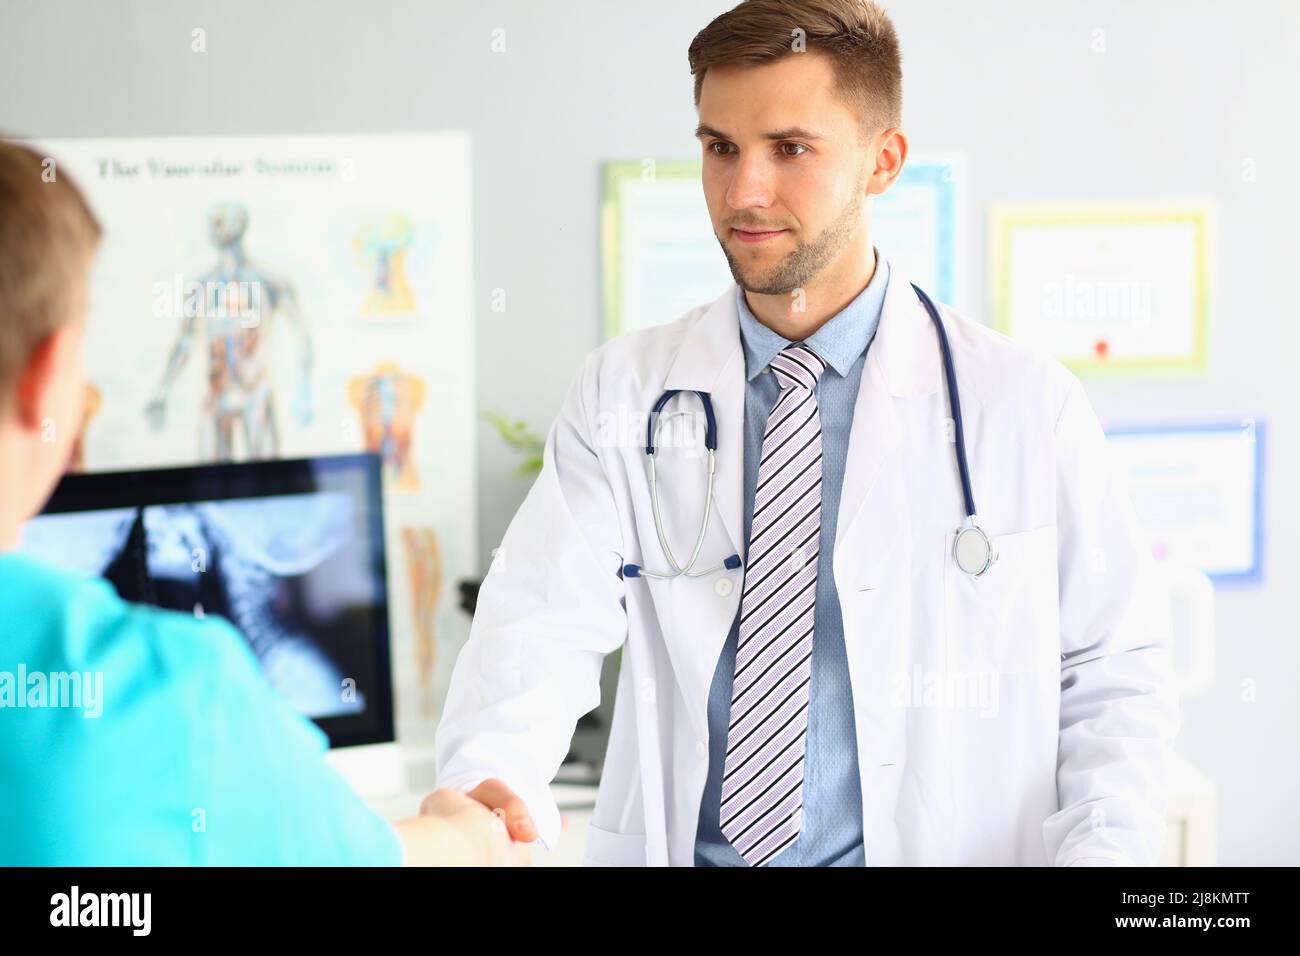 Facharzt begrüßt Kollegen, freundliche Handshake-Geste, intelligenter Arzt trägt medizinische Uniform Stockfoto